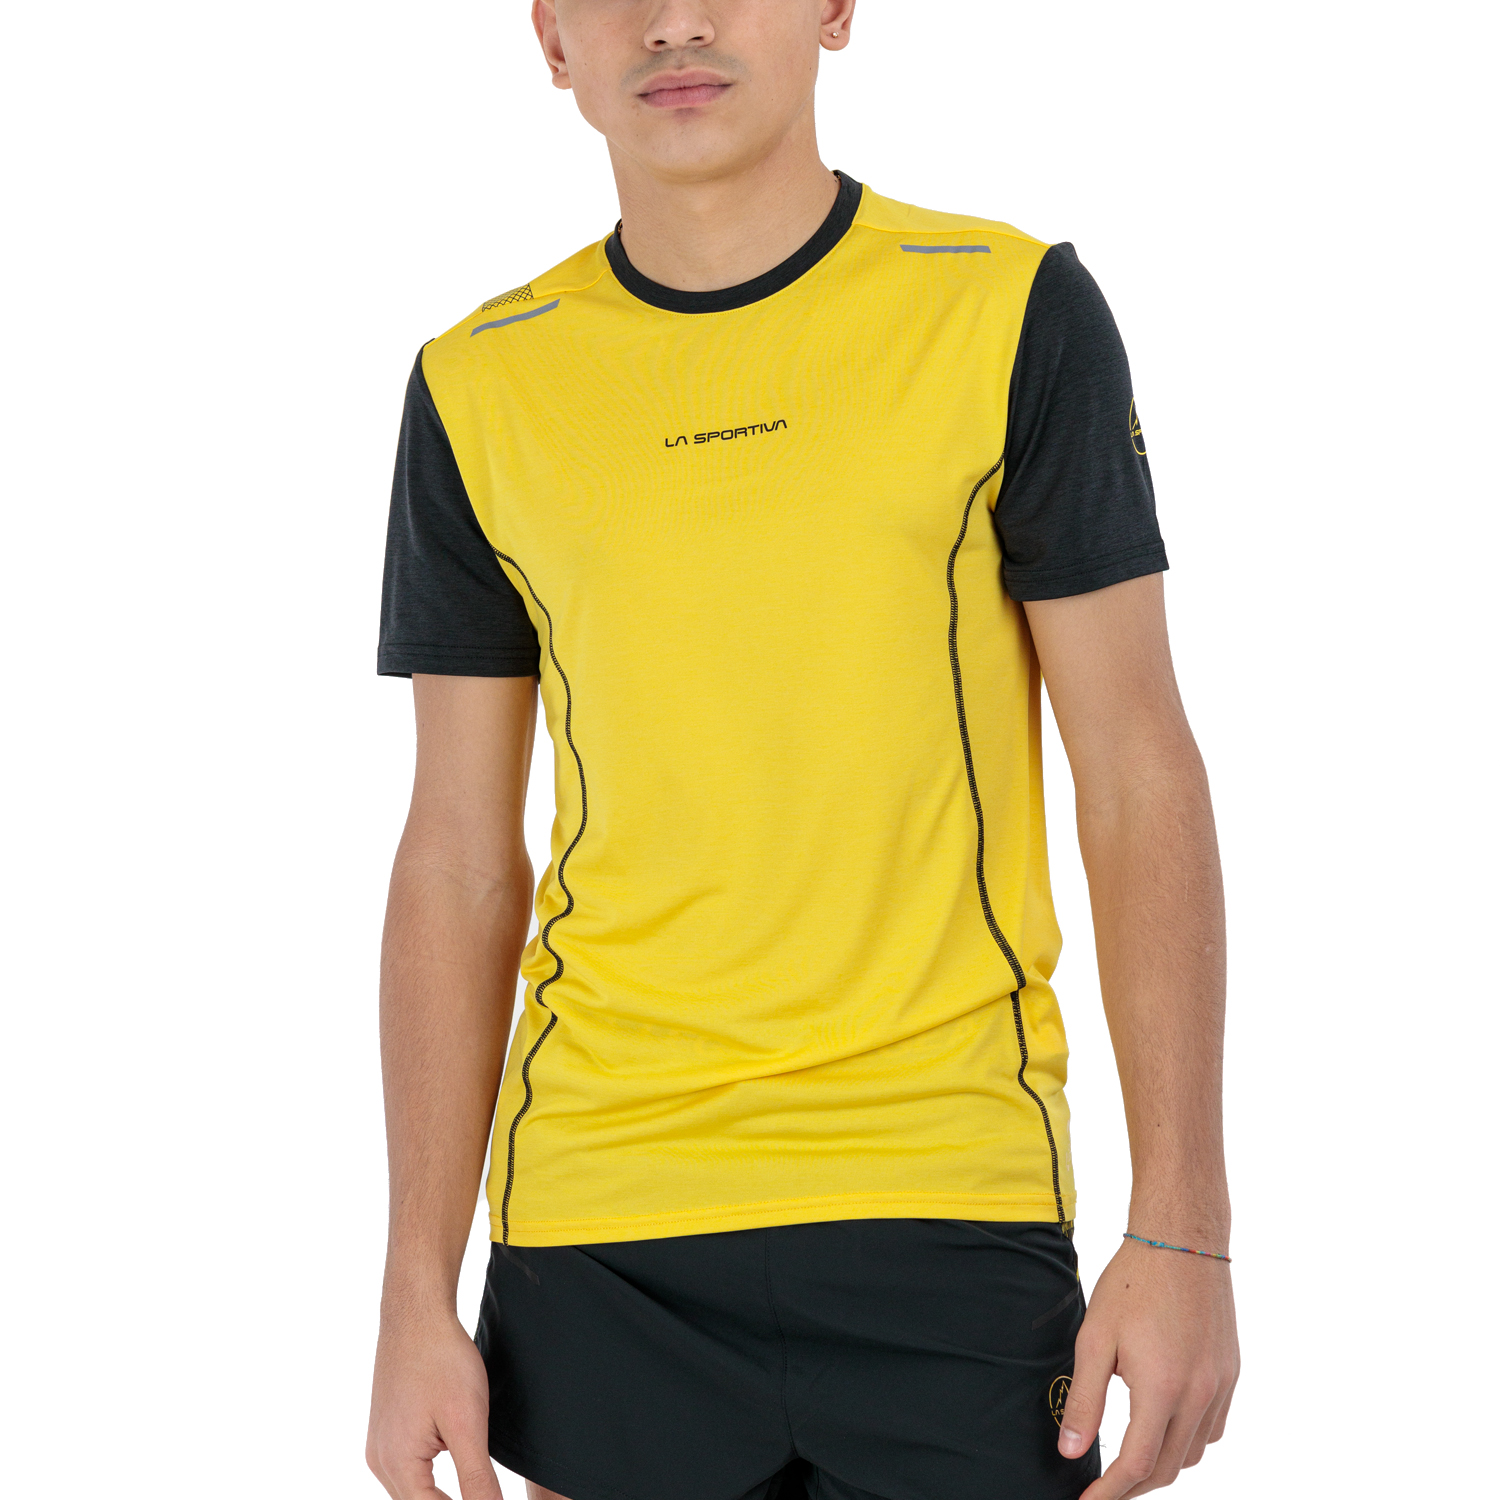 La Sportiva Tracer Maglietta - Yellow/Black